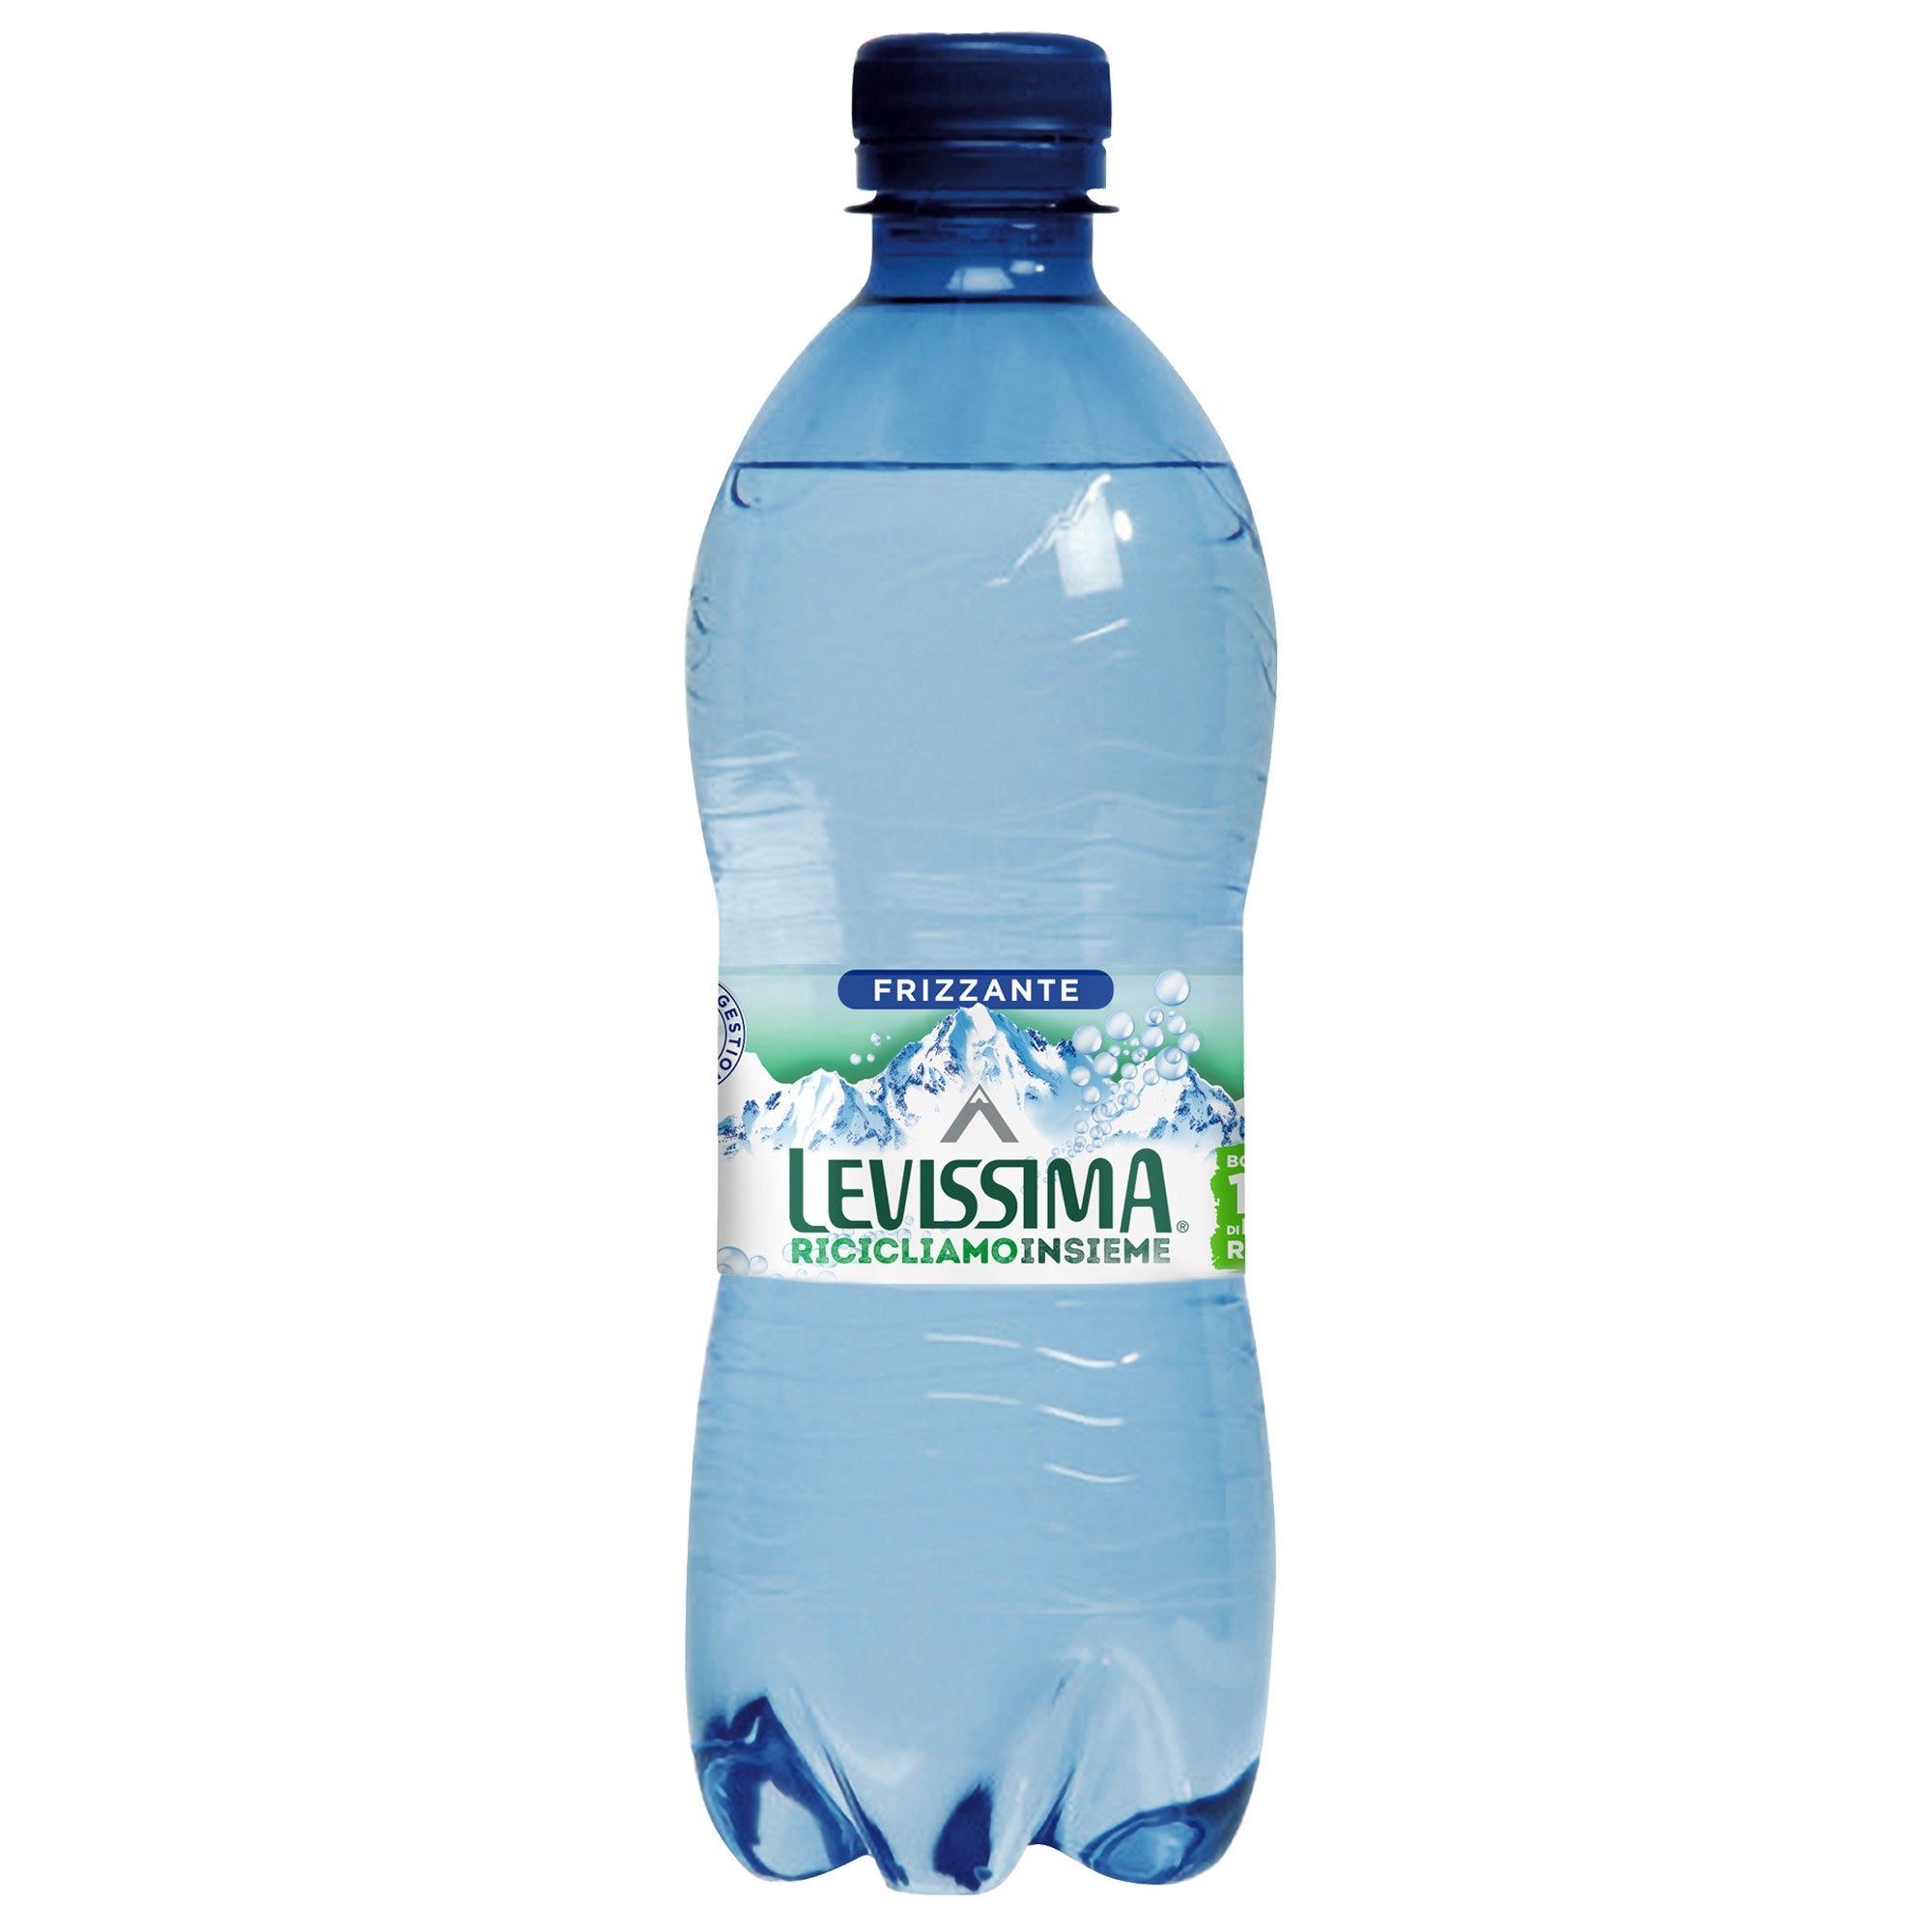 levissima-acqua-frizzante-bottiglia-pet-100-riciclabile-500ml